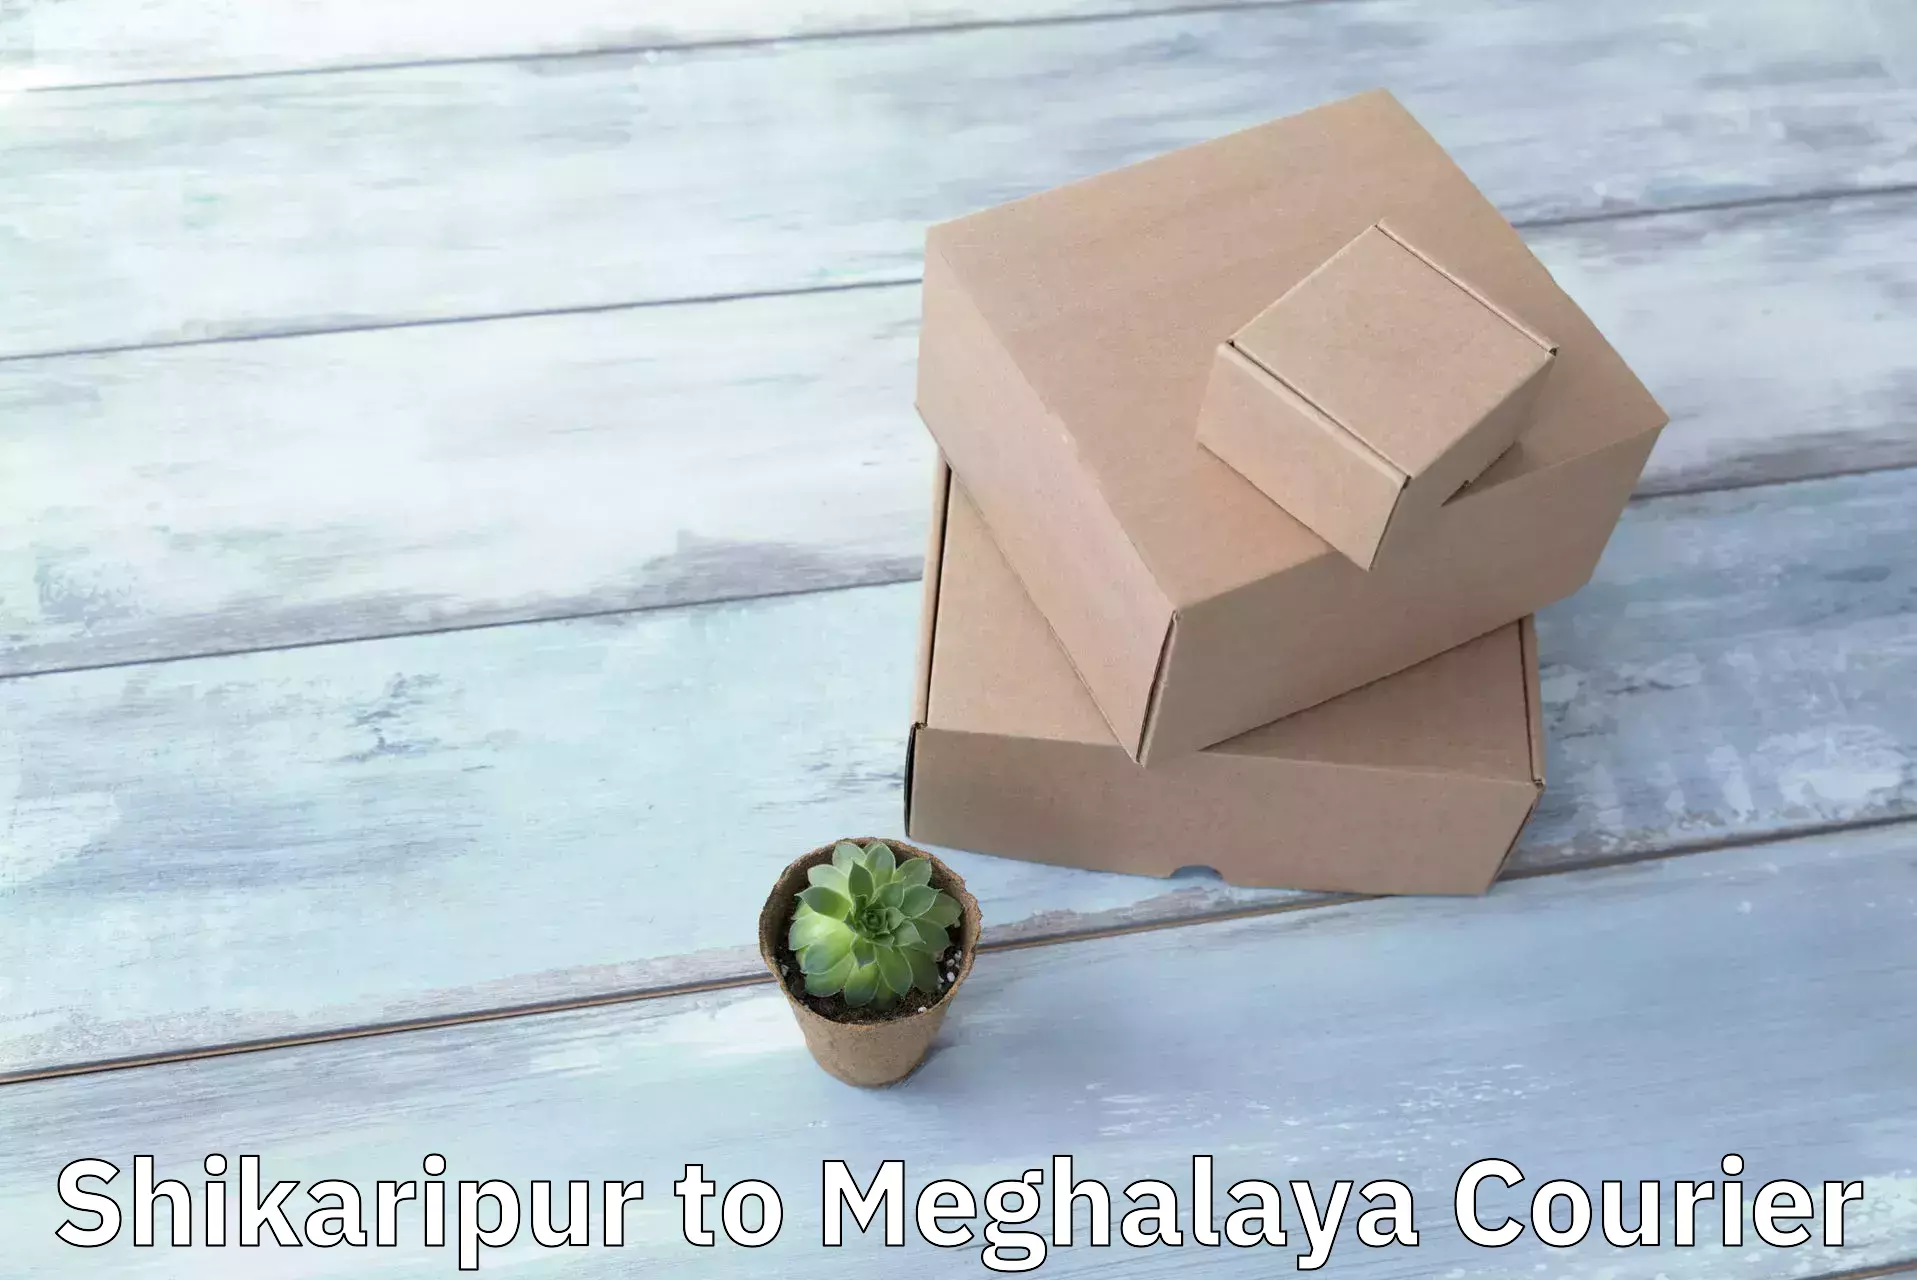 Custom courier packaging Shikaripur to Marshillong